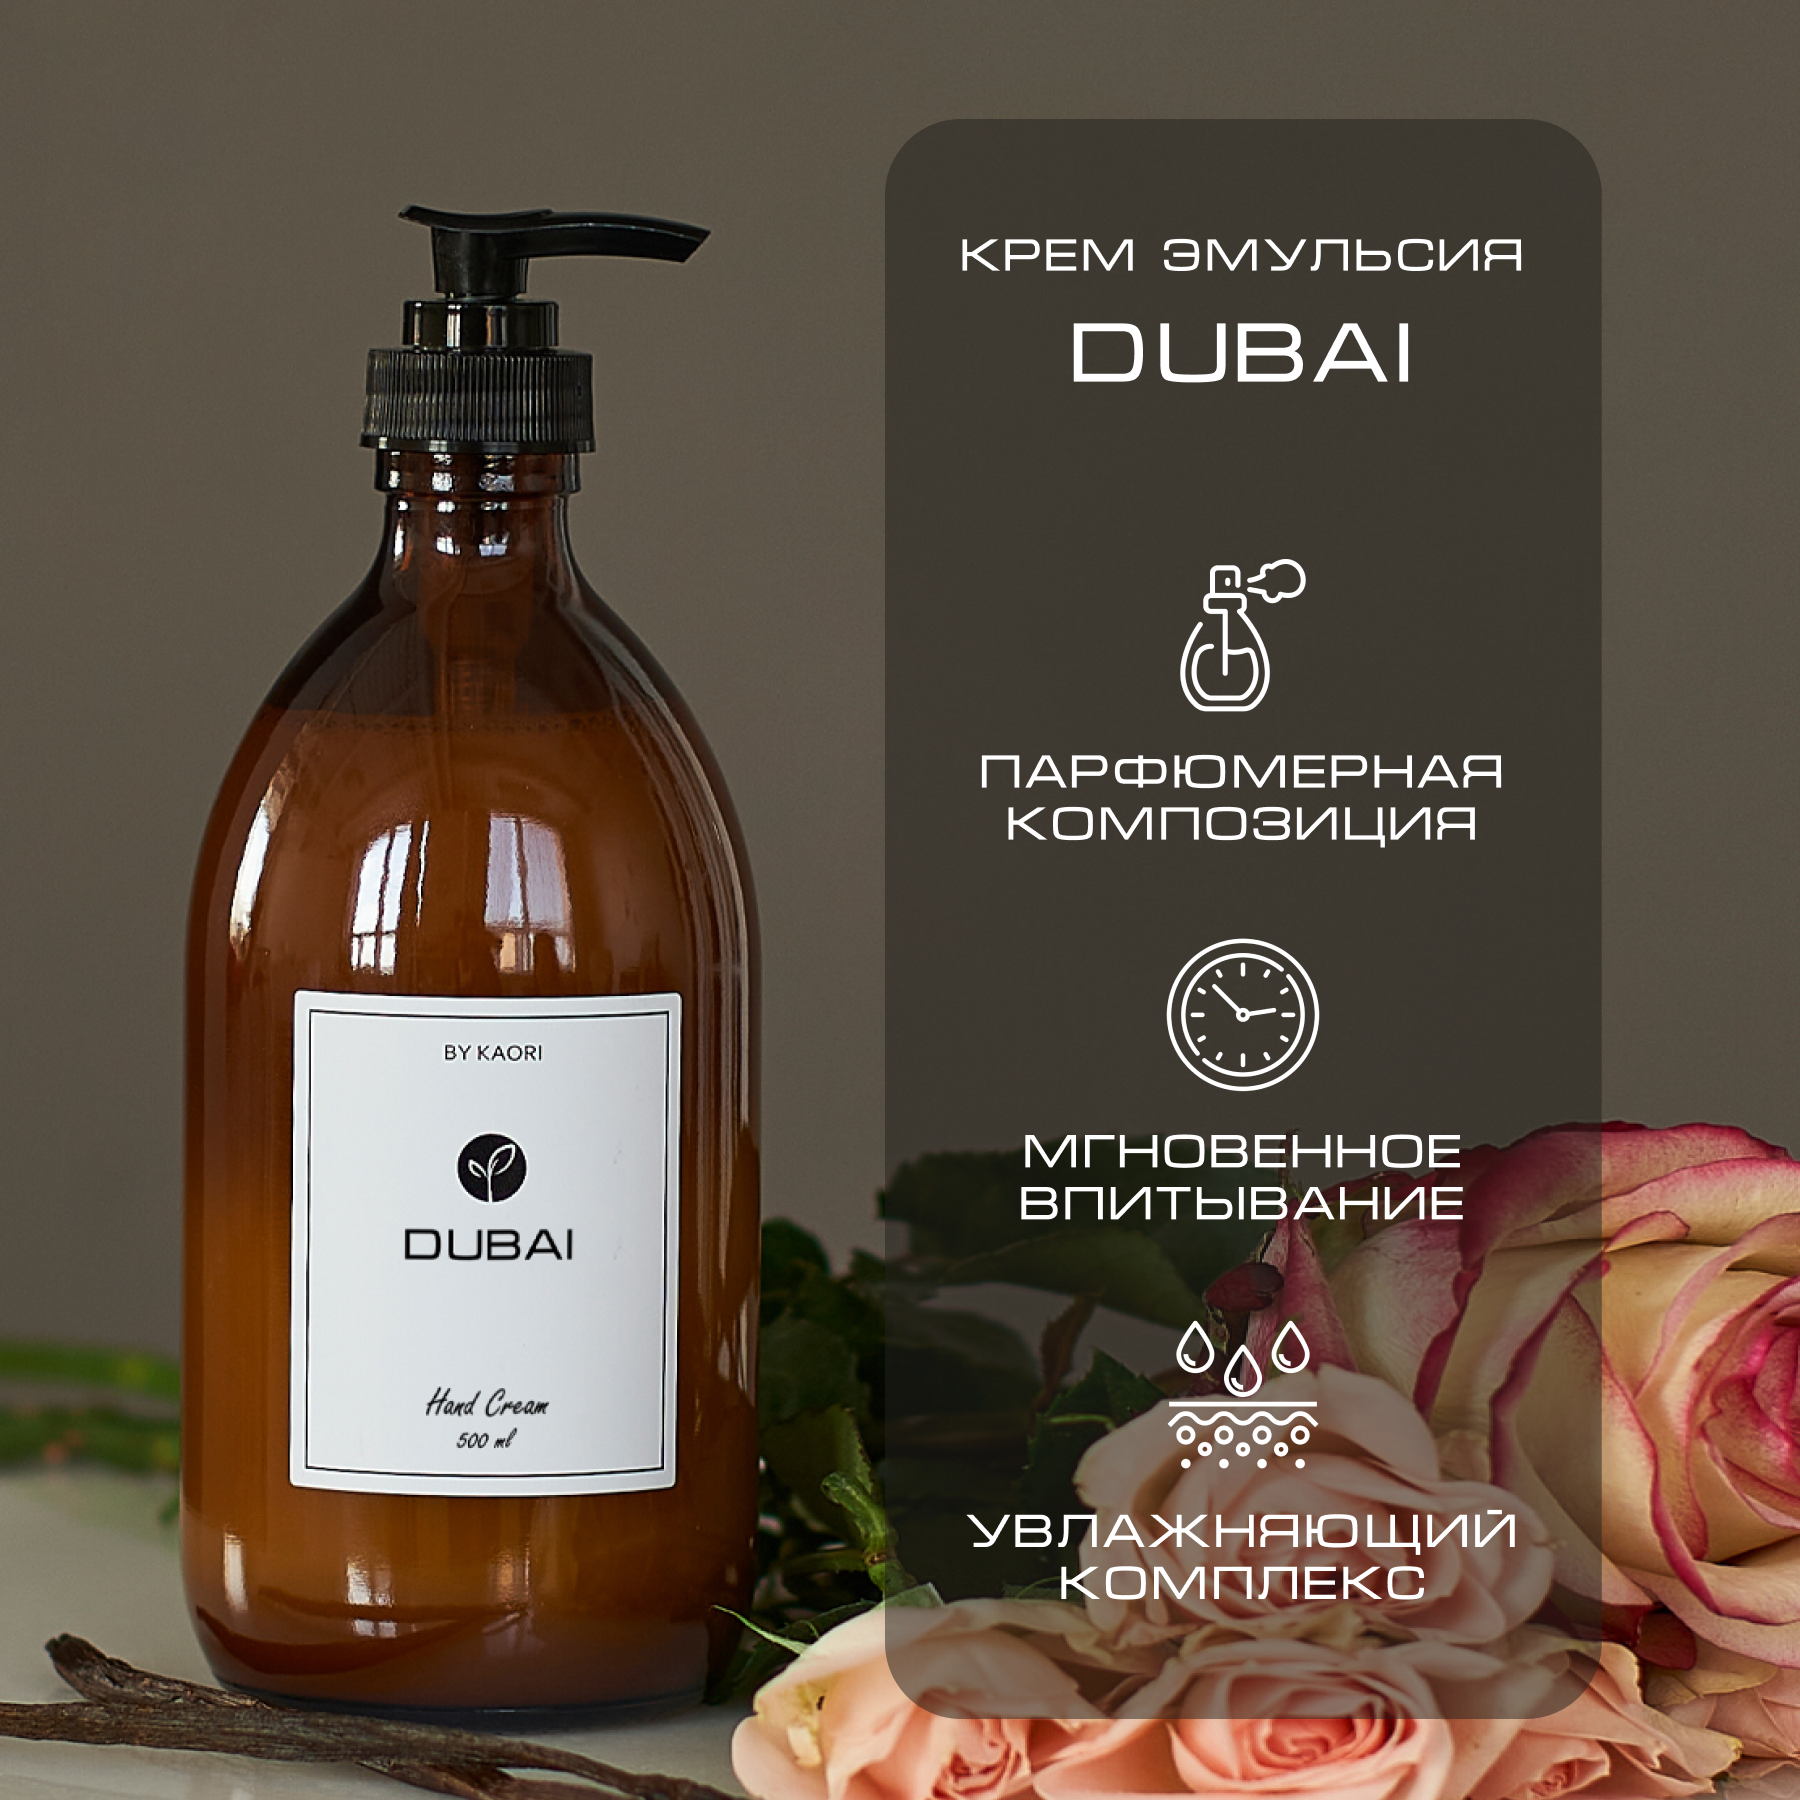 Крем эмульсия для рук By Kaori крем увлажняющий парфюмированный аромат Dubai 500 мл perle de dubai